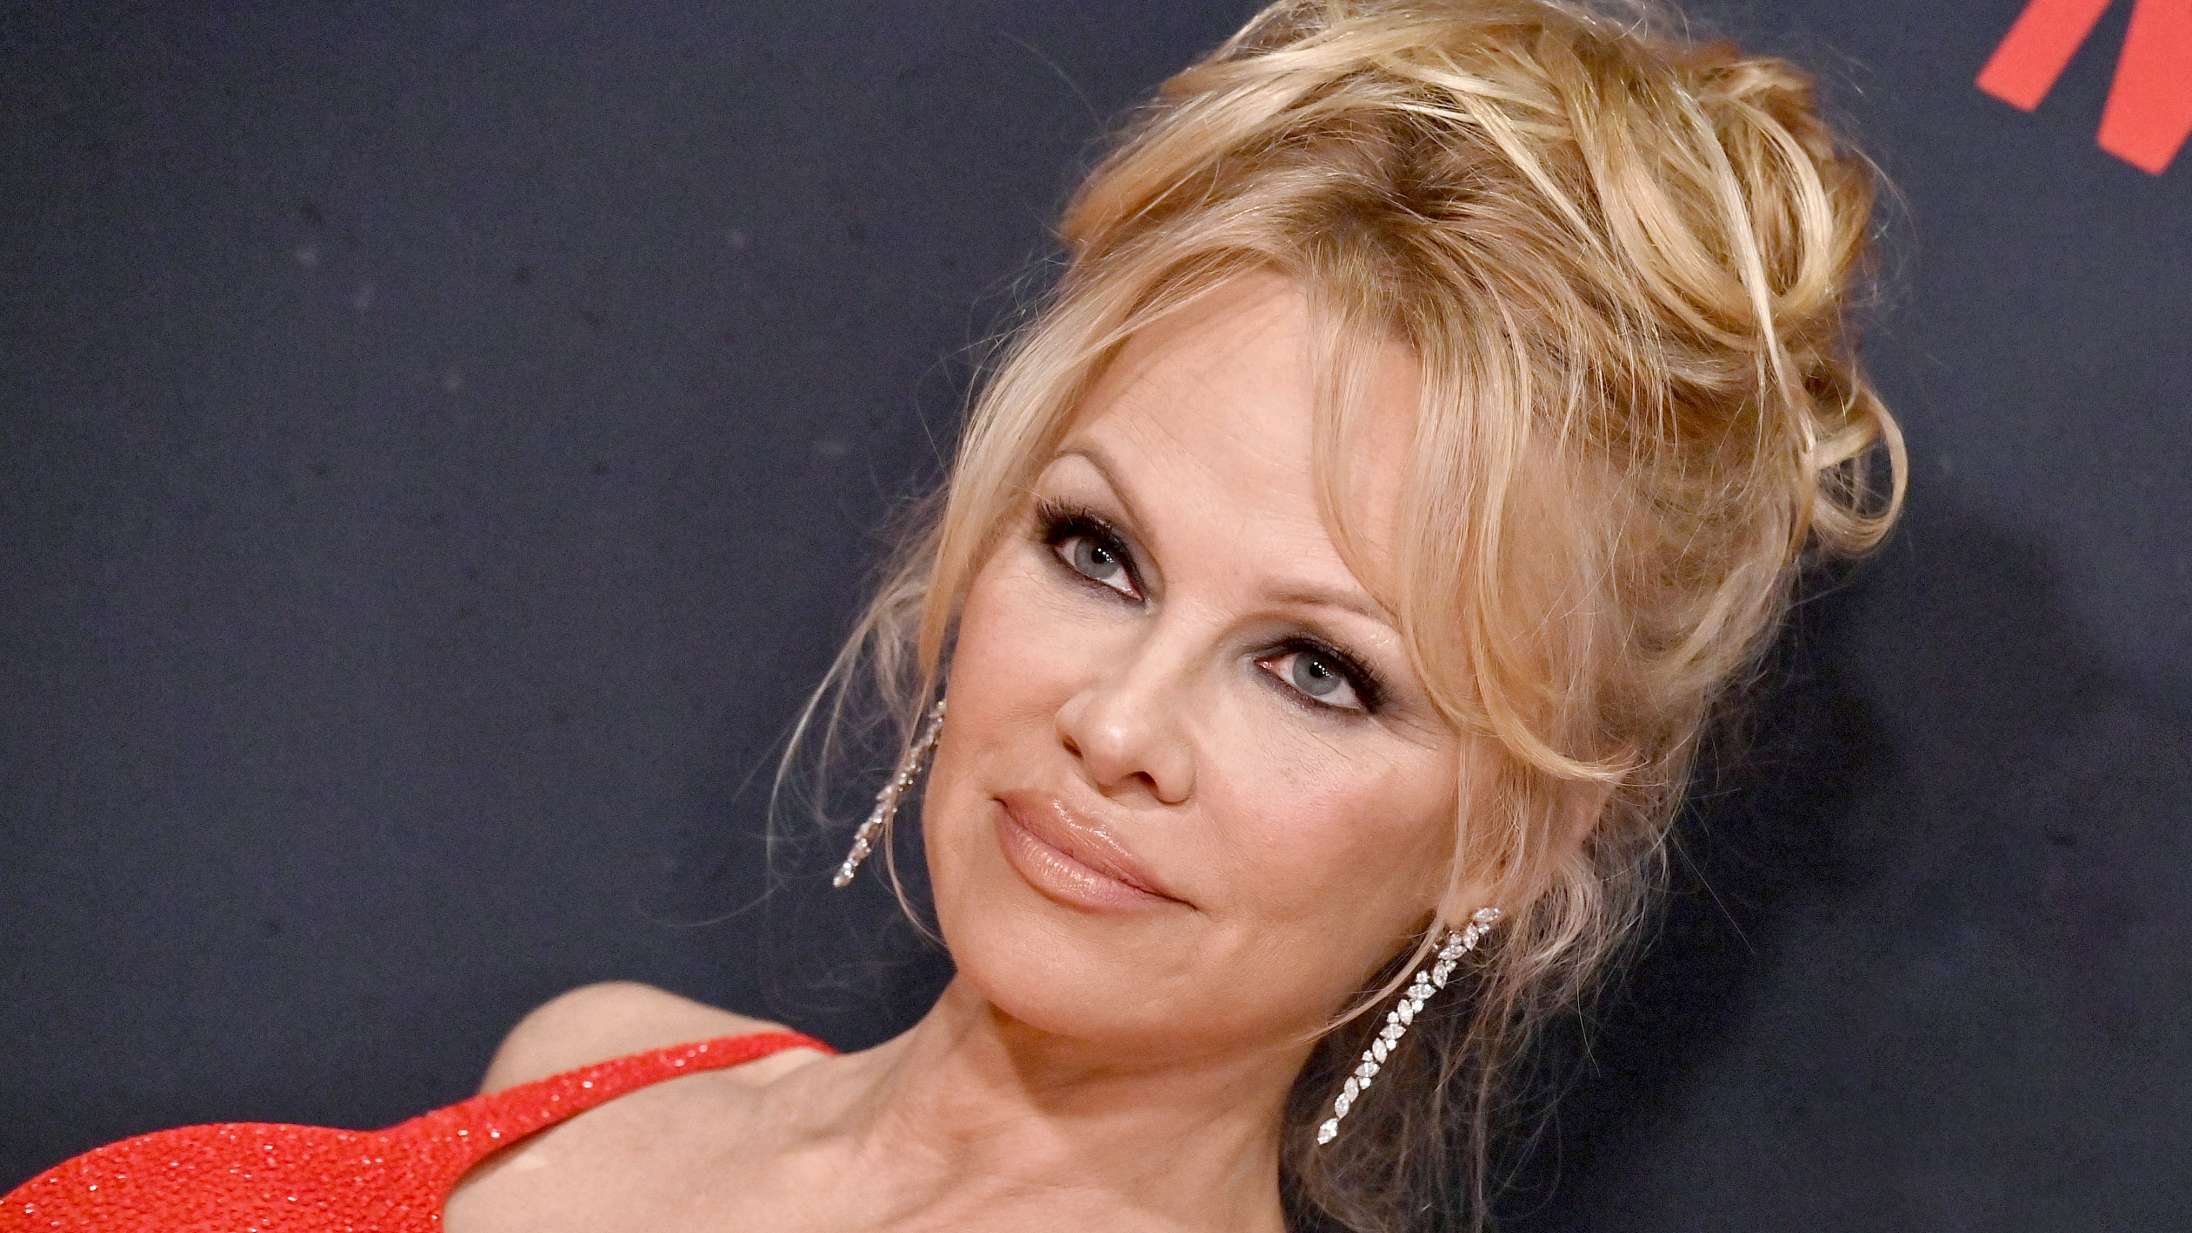 Kid Rock kaldte Pamela Anderson »luder« efter ‘Borat’-rolle, der førte til deres skilsmisse